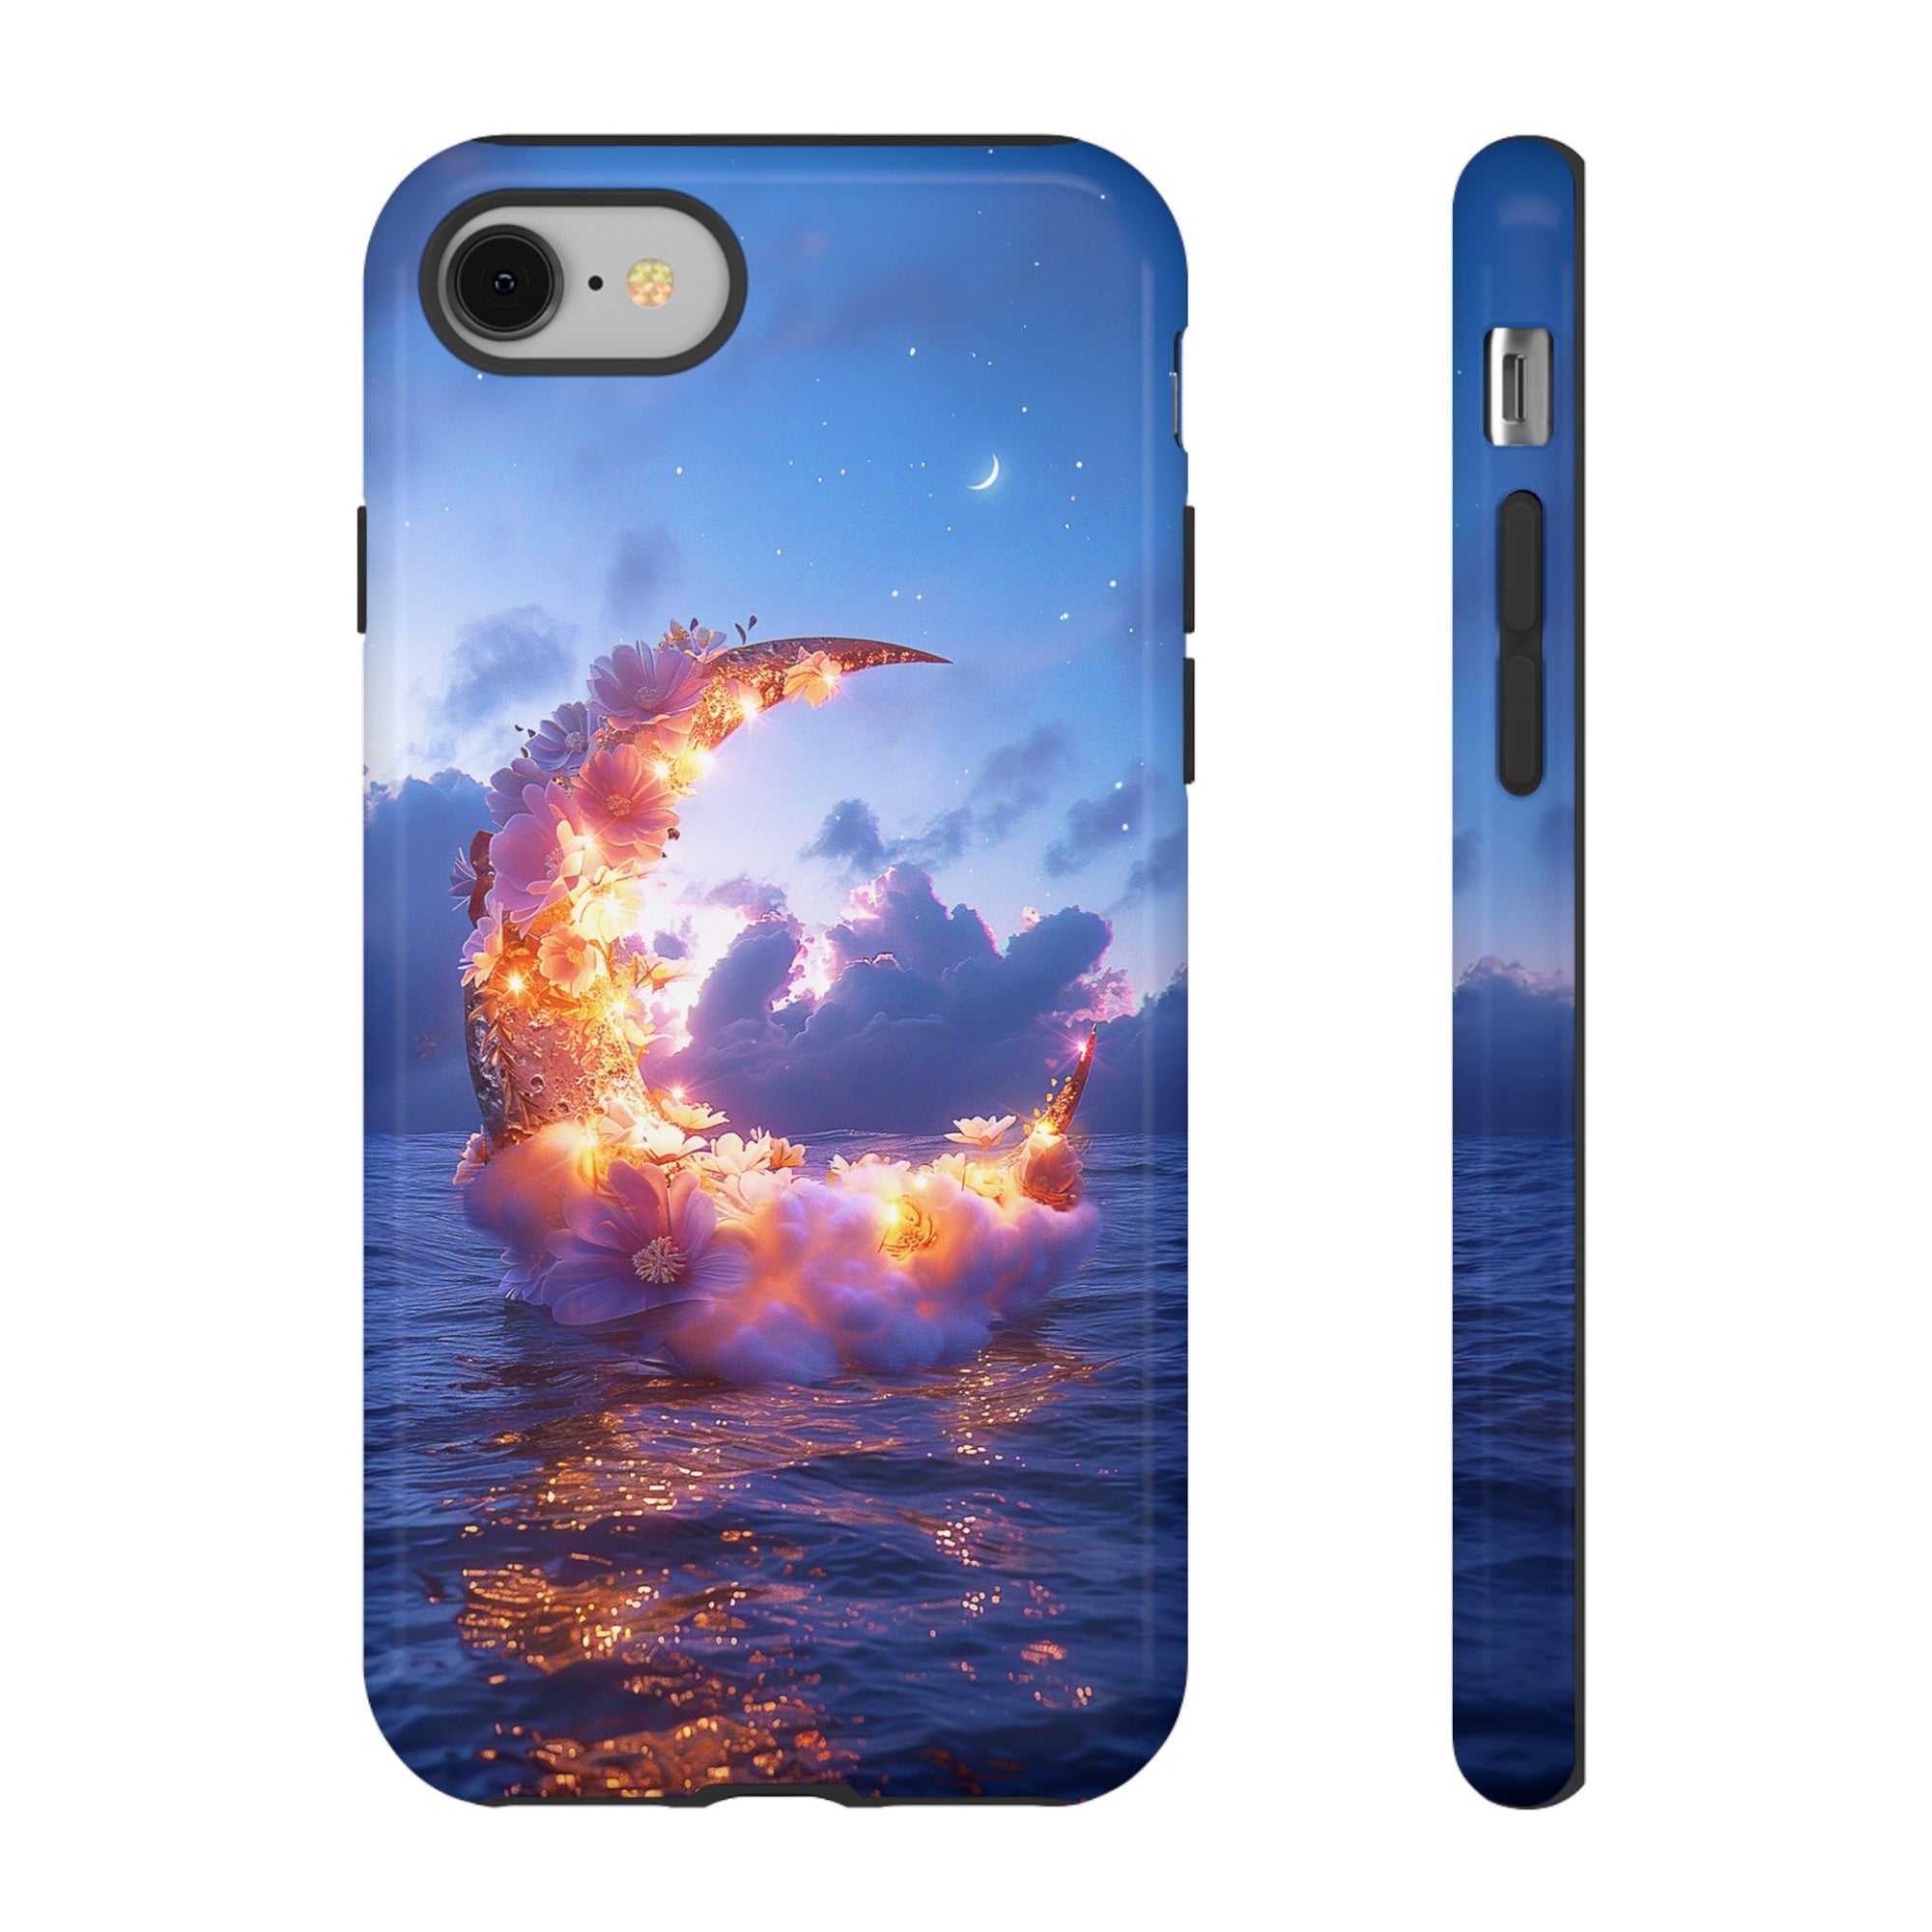 Sea of Dreams iPhone Case